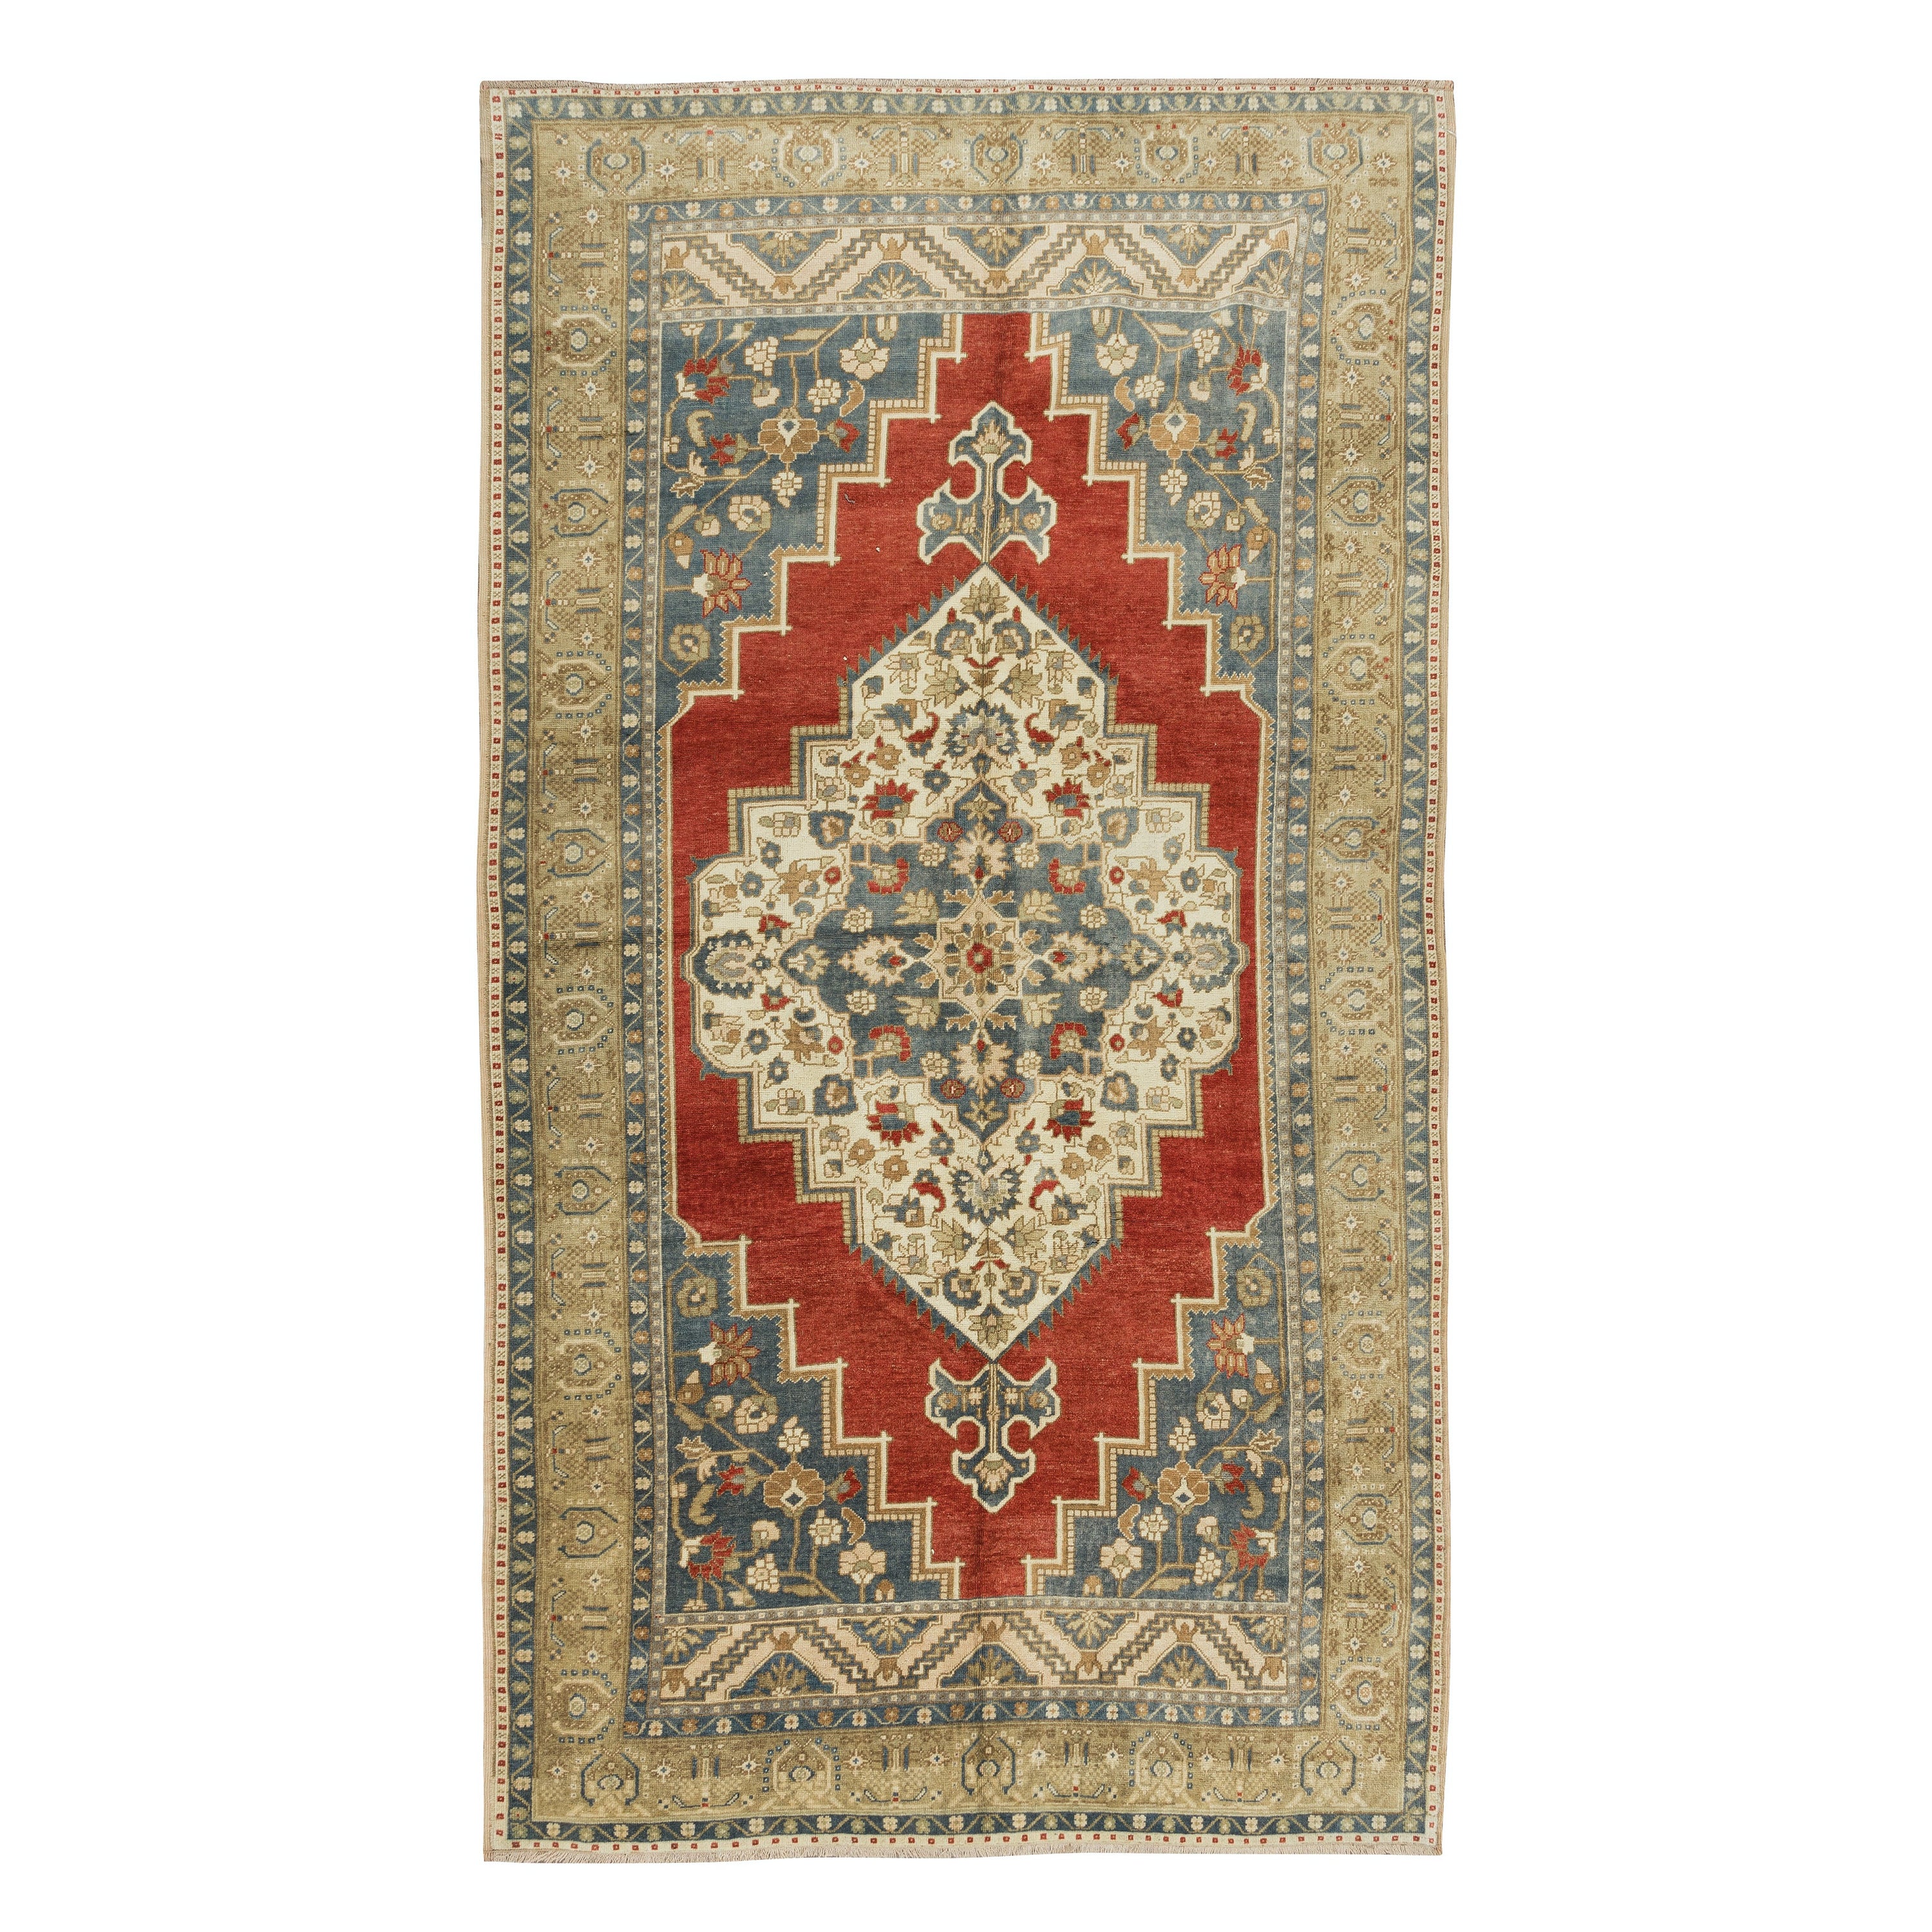 6x11 Ft Vintage Handgefertigter türkischer Stammeskunst-Wollteppich, Medaillon-Design, einzigartiger Teppich